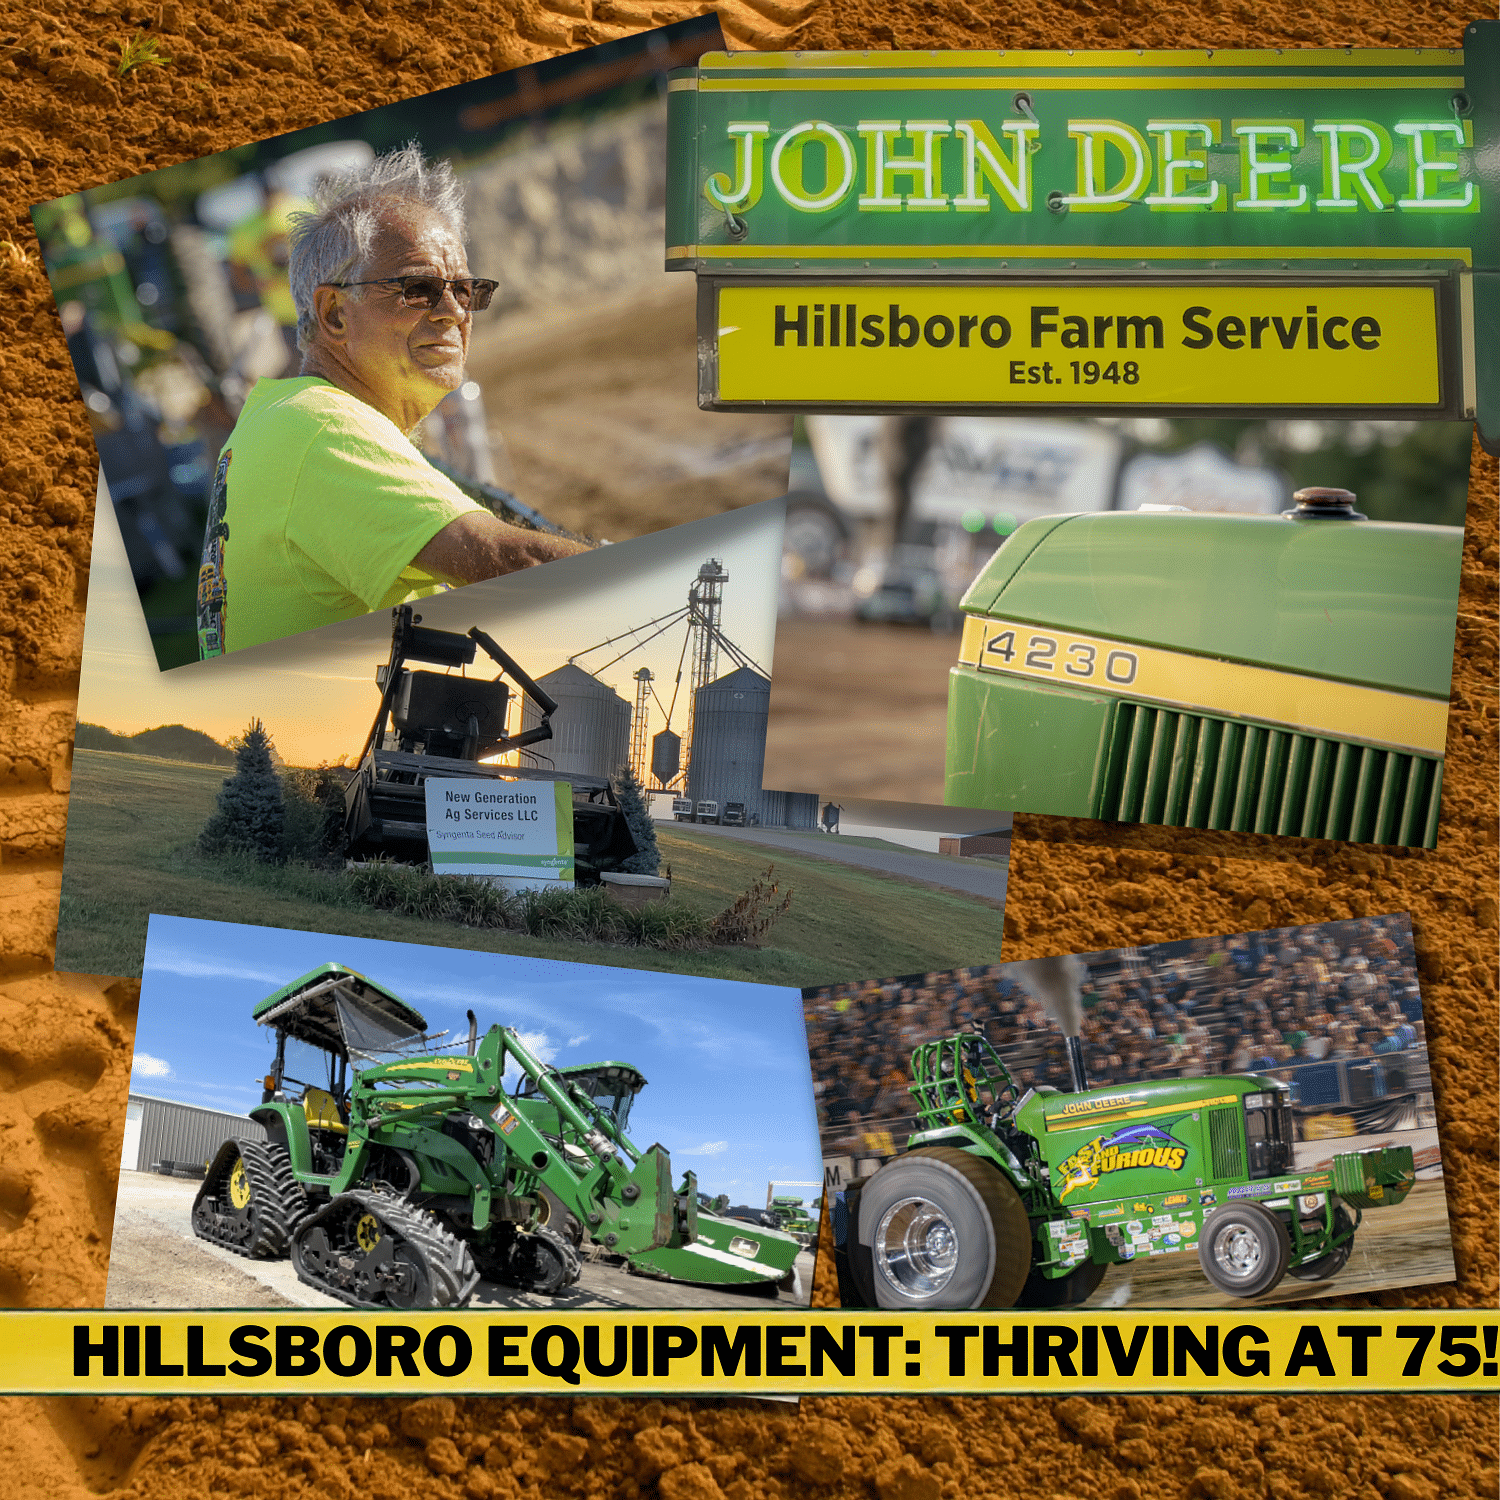 Hillsboro Equipment: Thriving at 75!